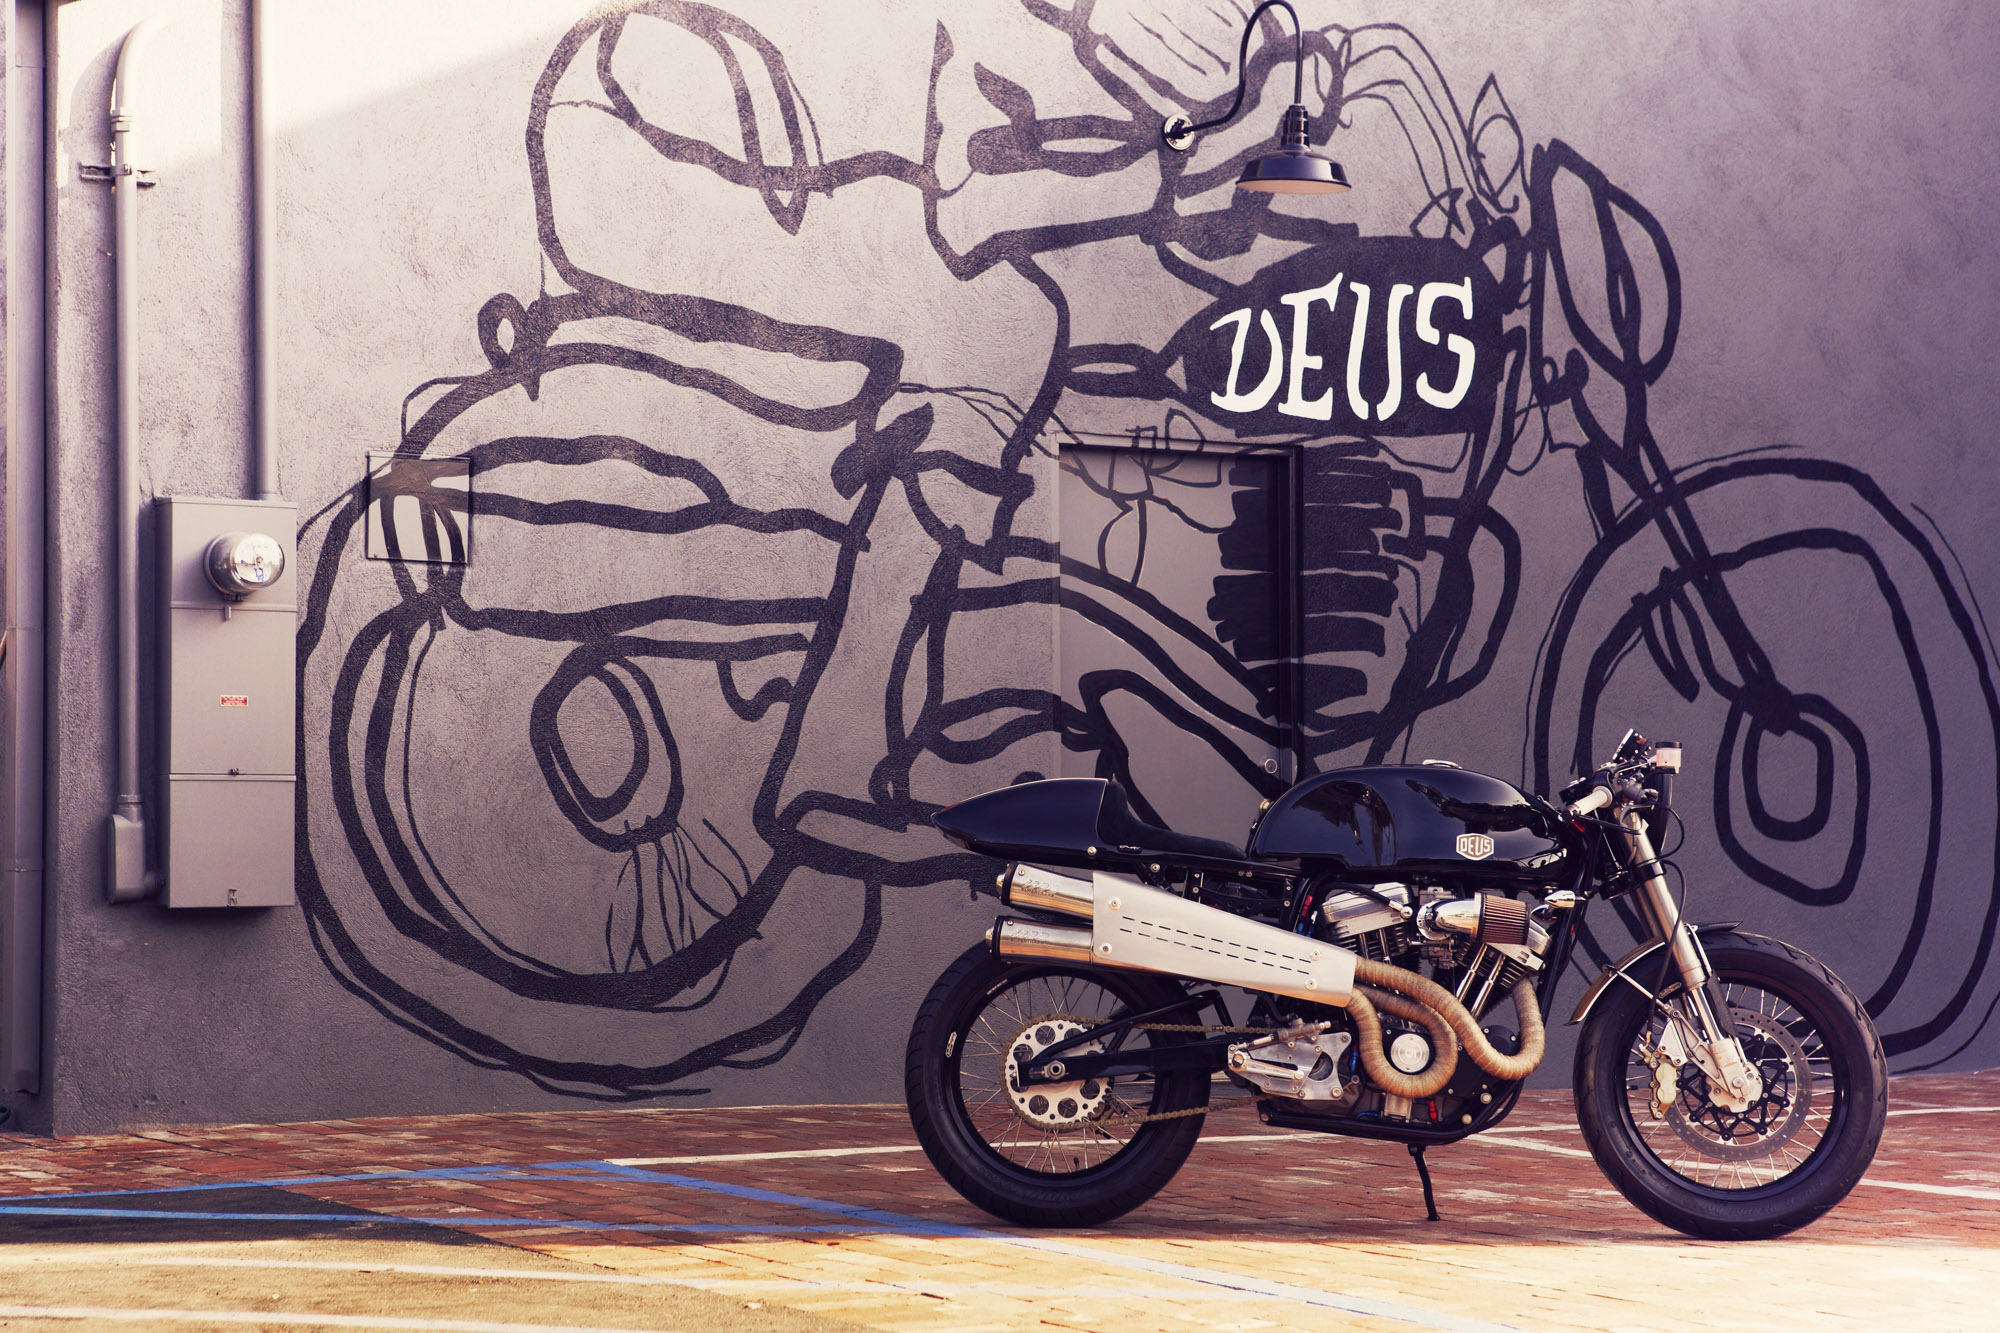 papier peint deus ex machina,véhicule à moteur,moto,véhicule,mur,art de rue